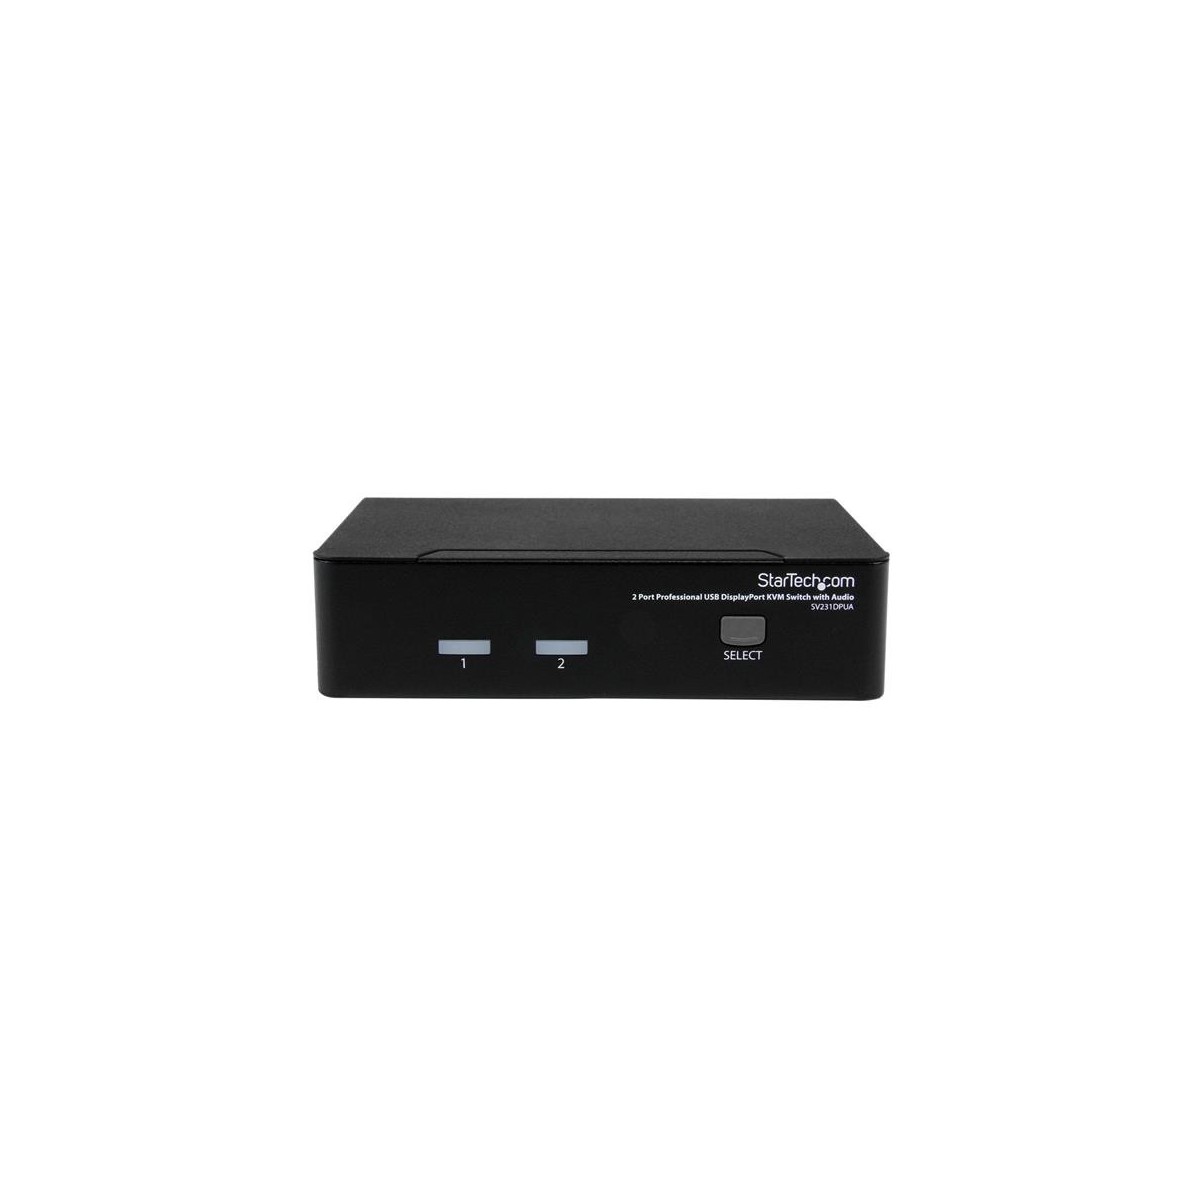 StarTech.com 2 Port Professional USB DisplayPort KVM Switch with Audio - 3840 x 2400 pixels - 4K Ultra HD - 24 W - Black